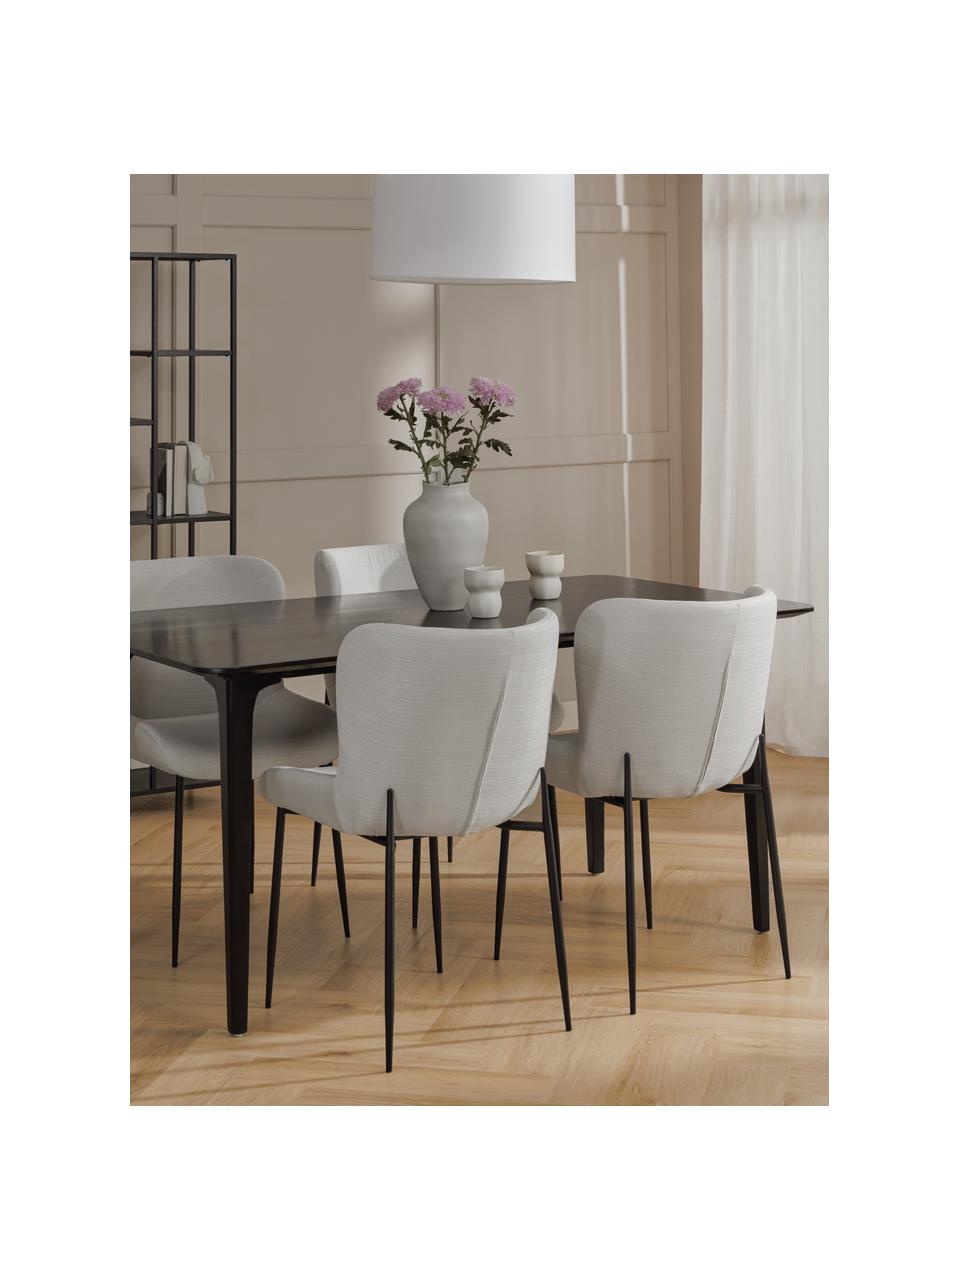 Gestoffeerde stoel Tess in crèmewit, Bekleding: polyester, Poten: metaal, gepoedercoat, Geweven stof crèmewit, poten zwart, B 49 x D 64 cm